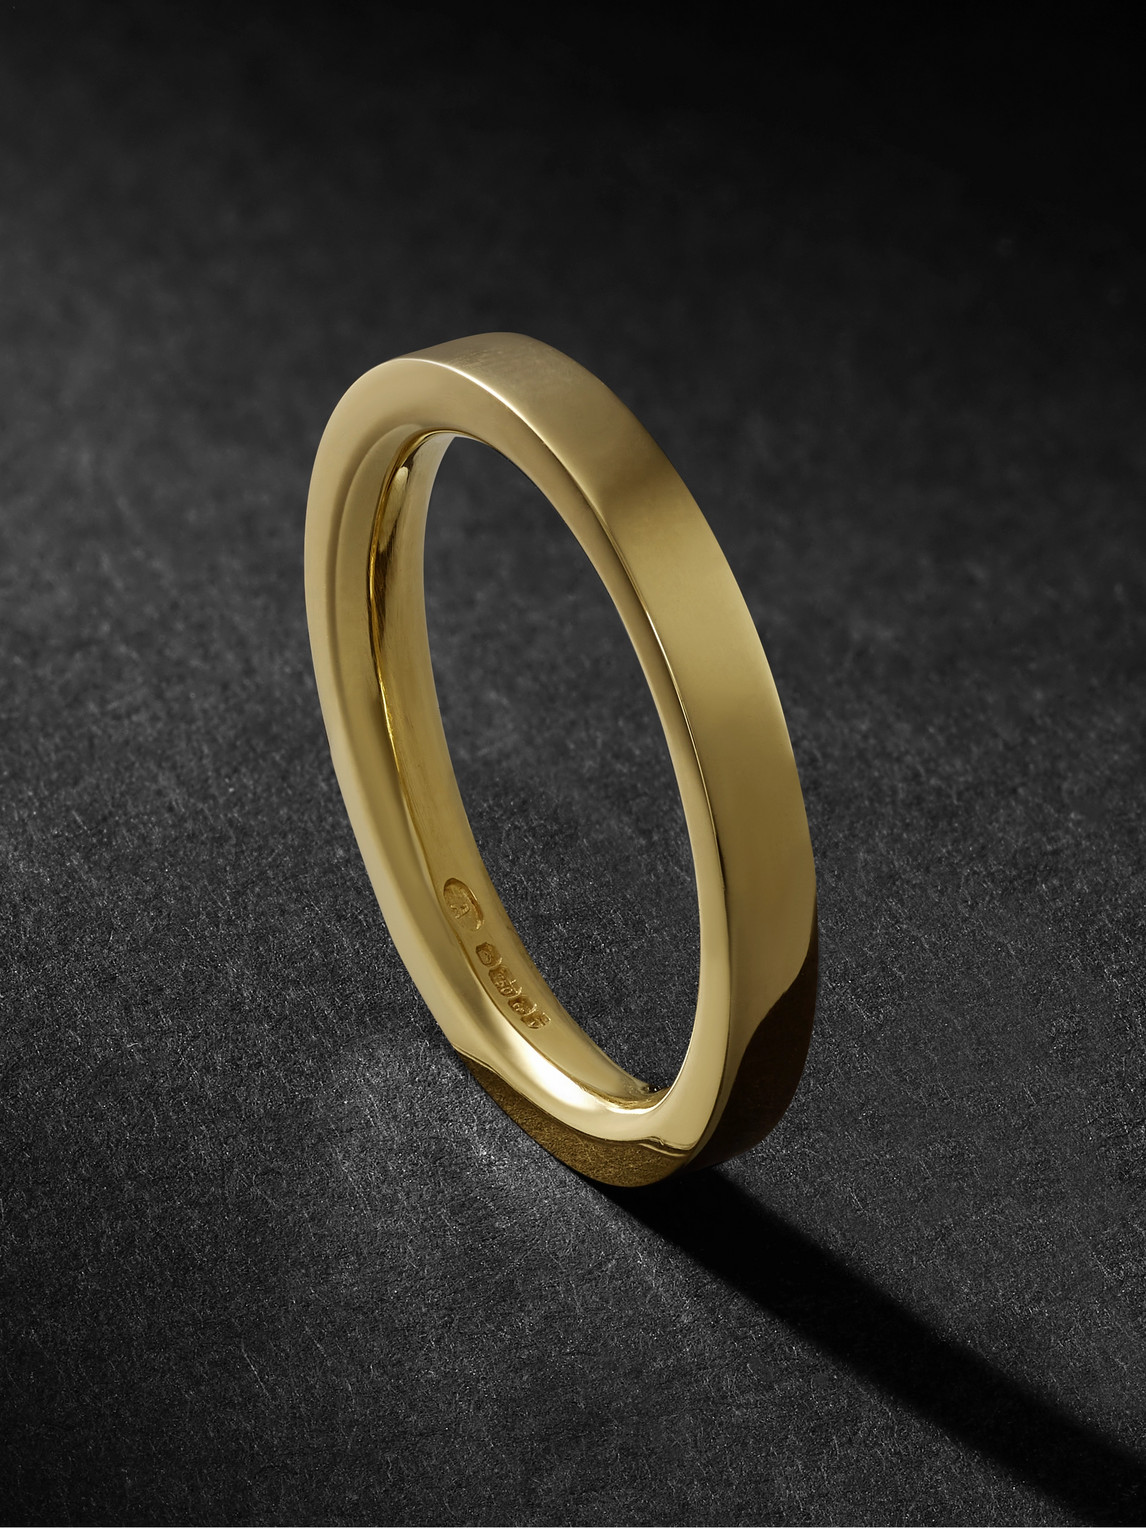 Alice Made This P4 Bancroft 18-karat Gold Ring